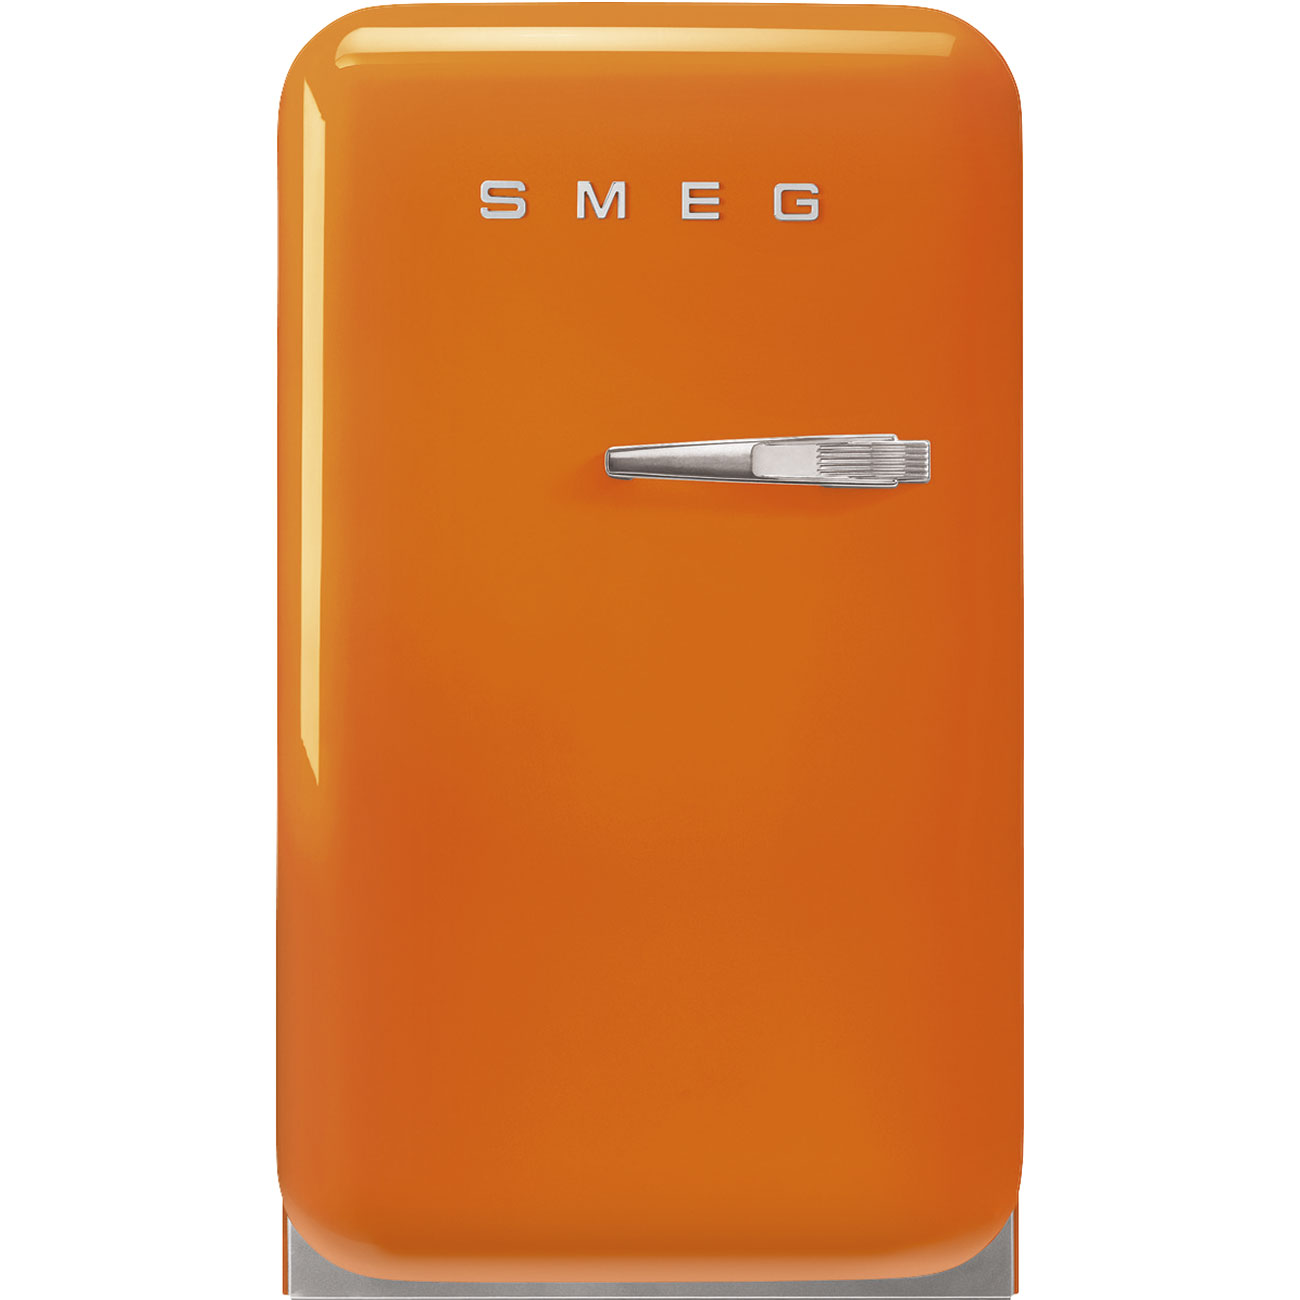 Orange refrigerator - Smeg_1